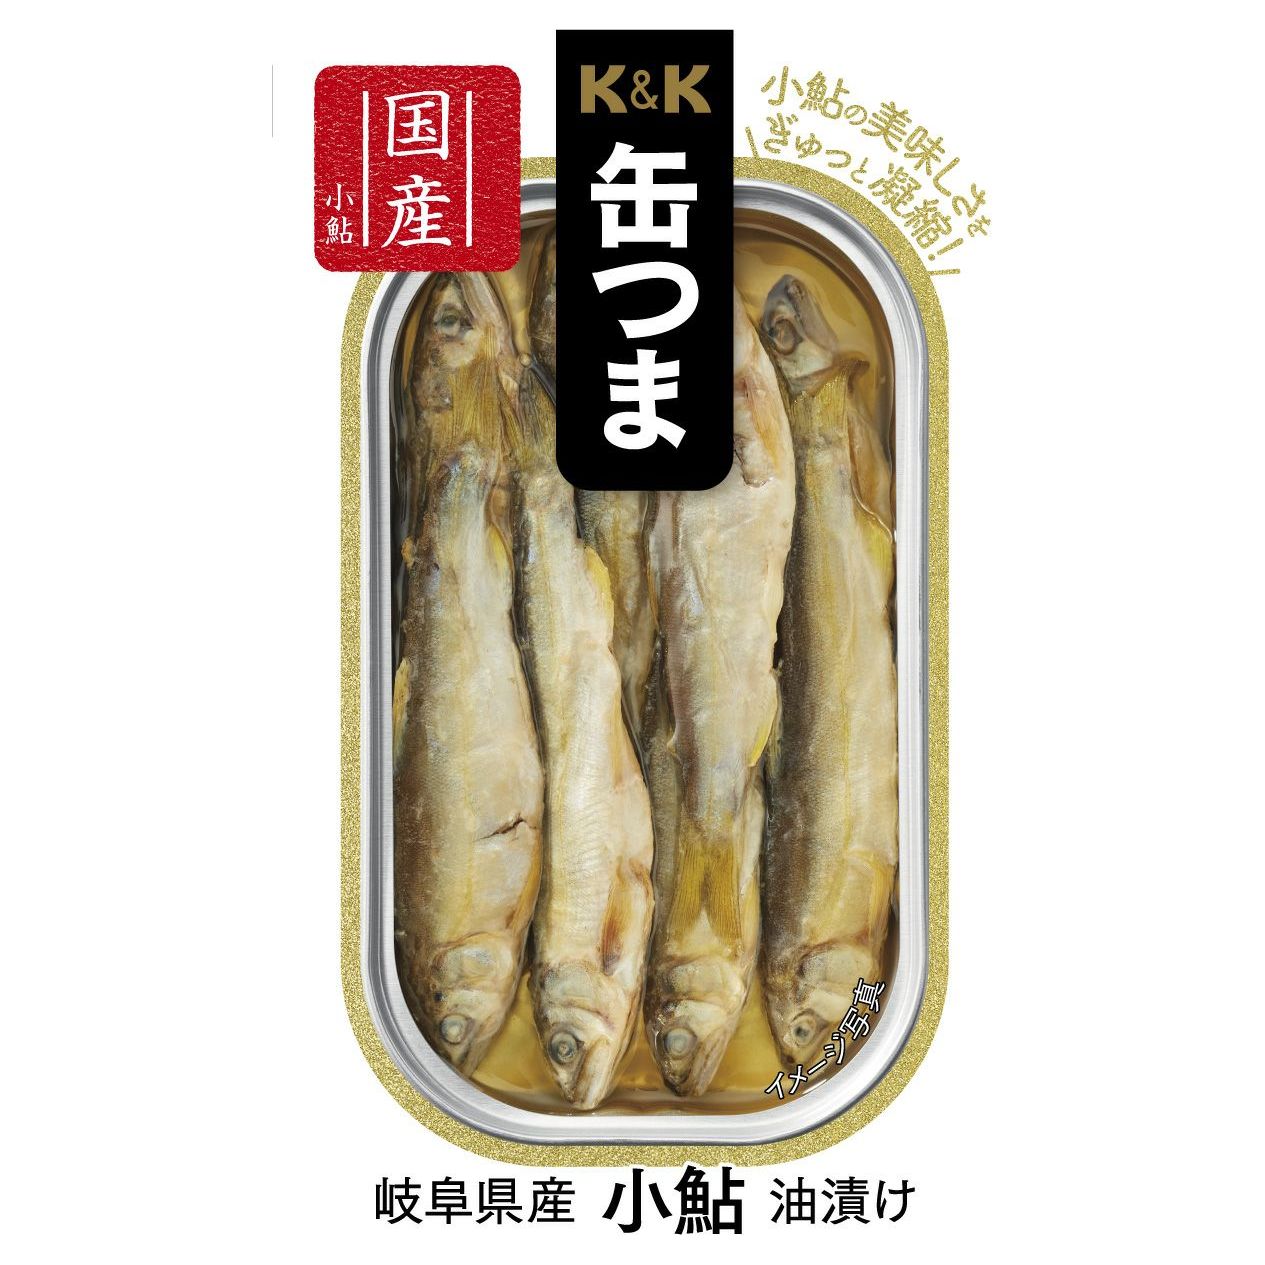 K & K can Tsuna Gifu pickled in Koju Oil from Gifu Prefecture